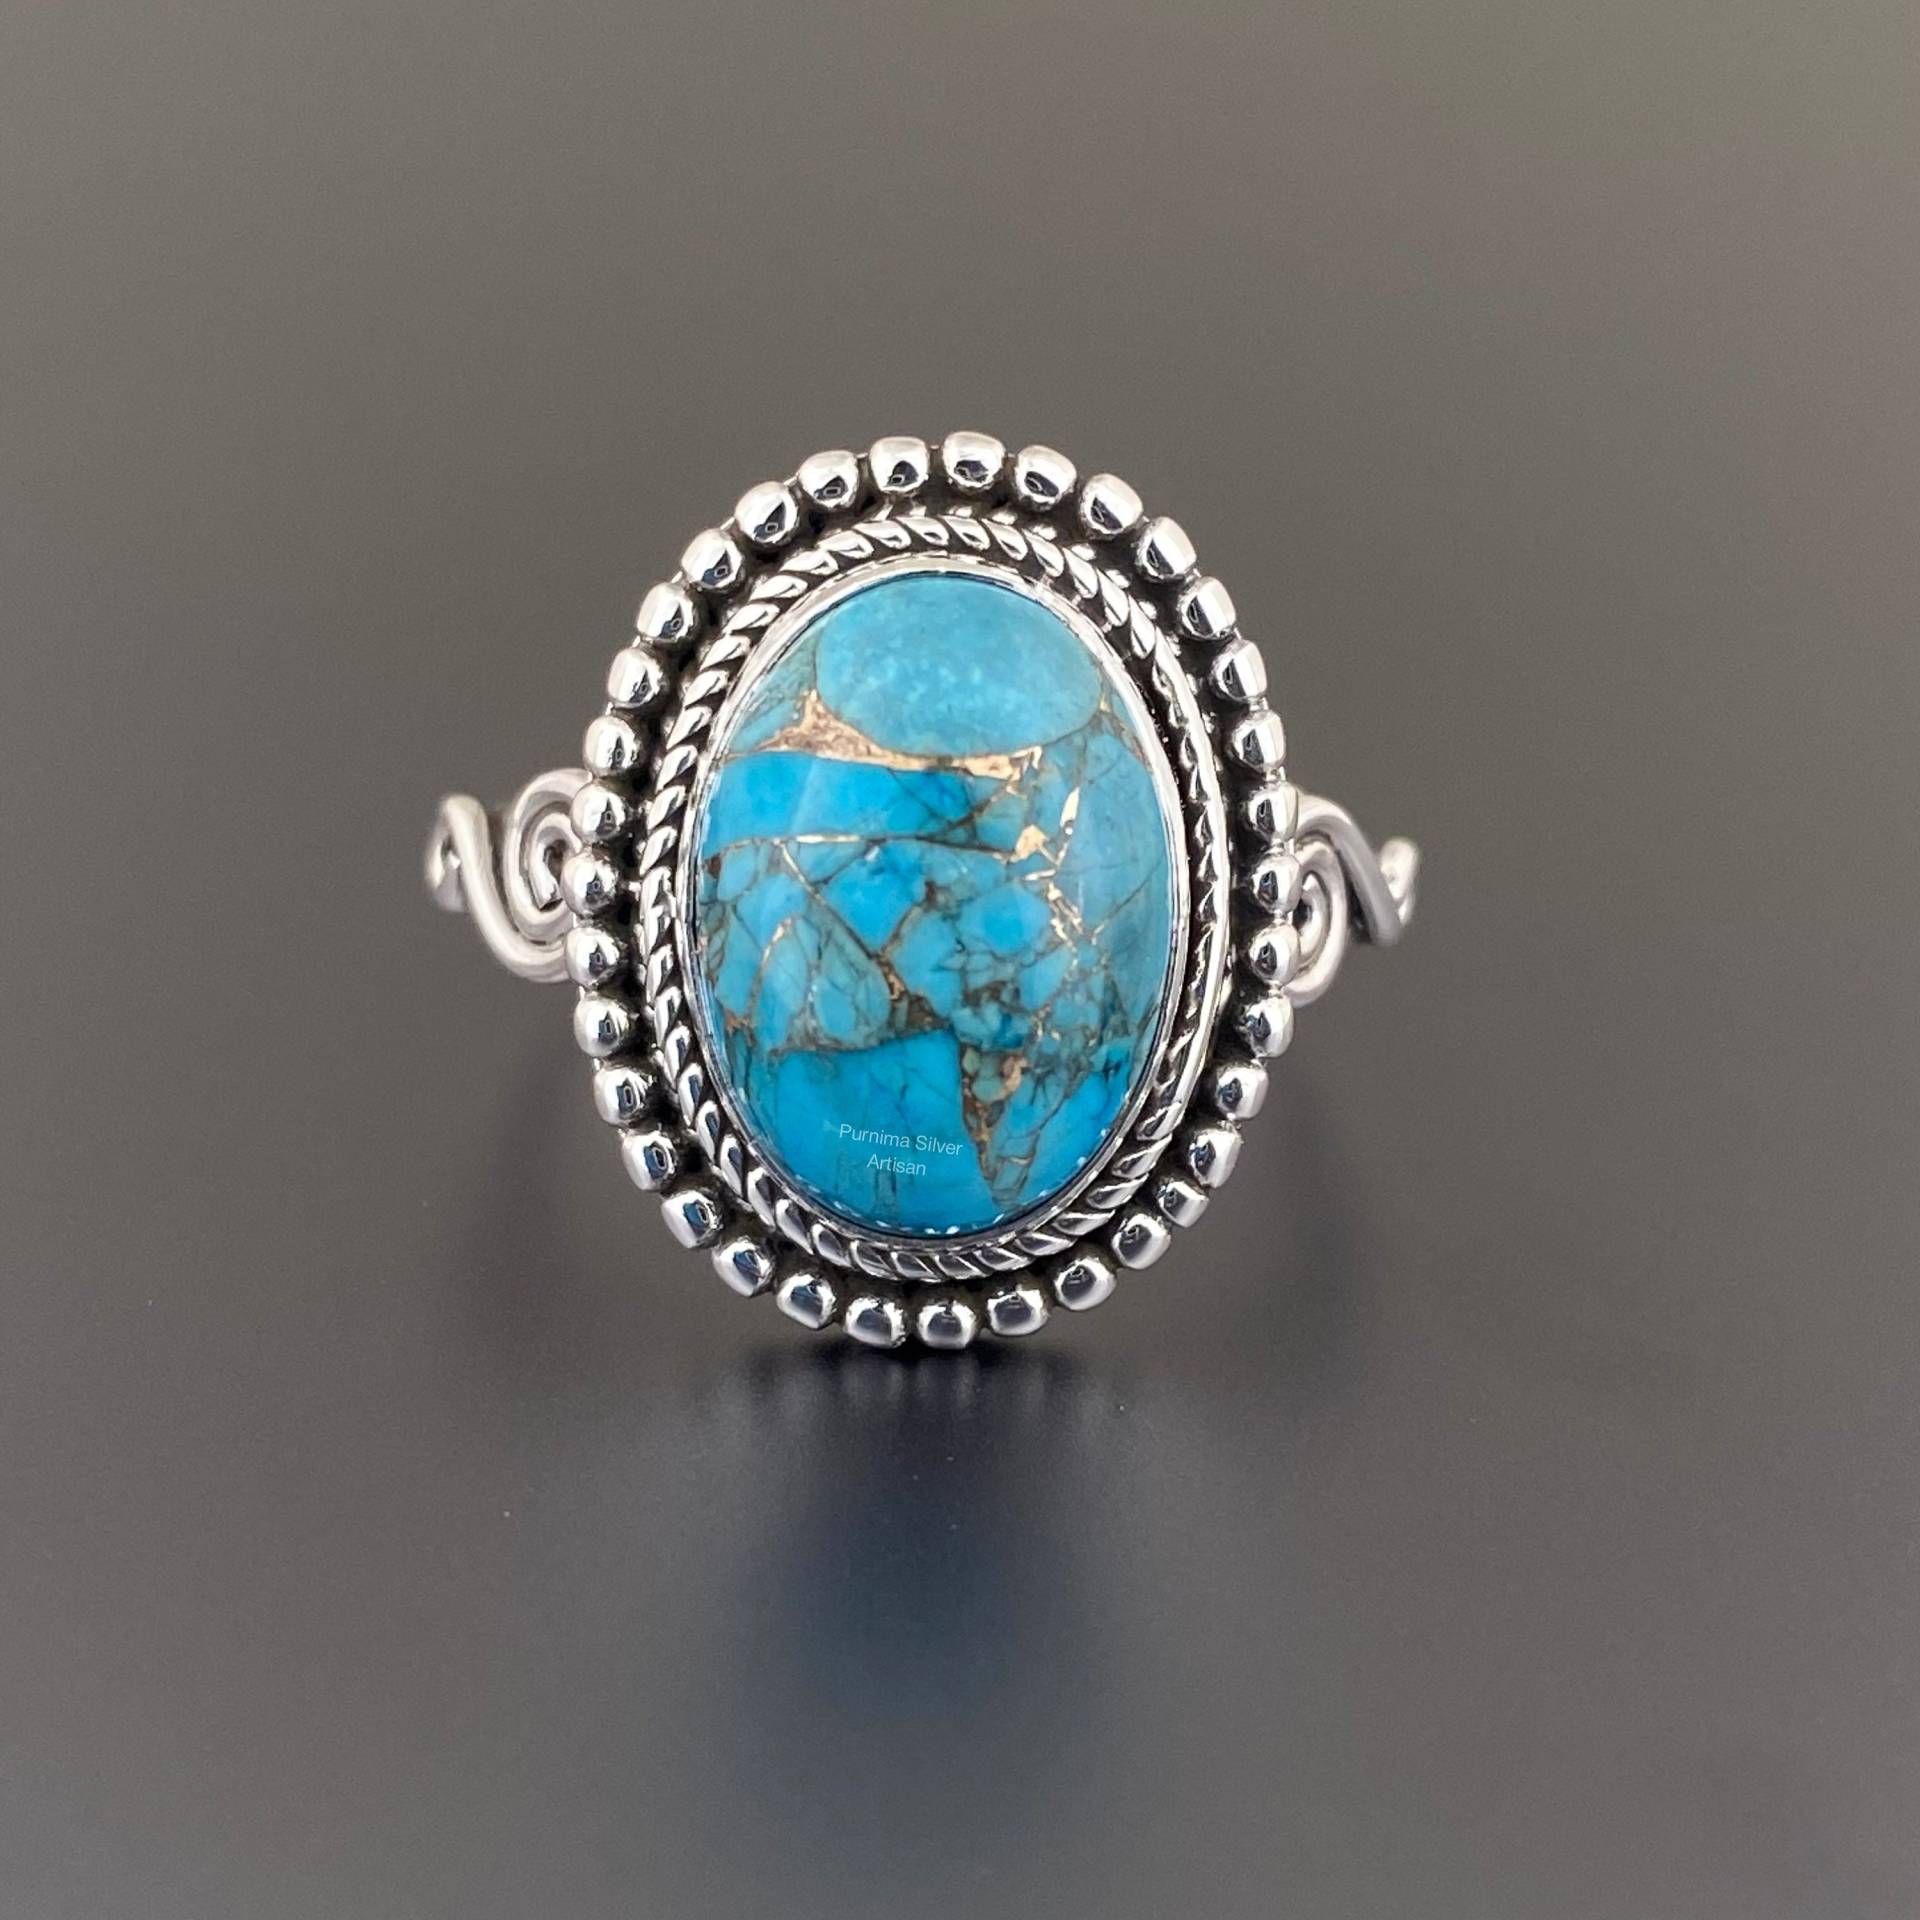 Frauen Türkis Band Ring Handgemachte 925 Sterling Silber Vintage Halbedel Blau Coppet Designer von PurnimaSilverArtisan